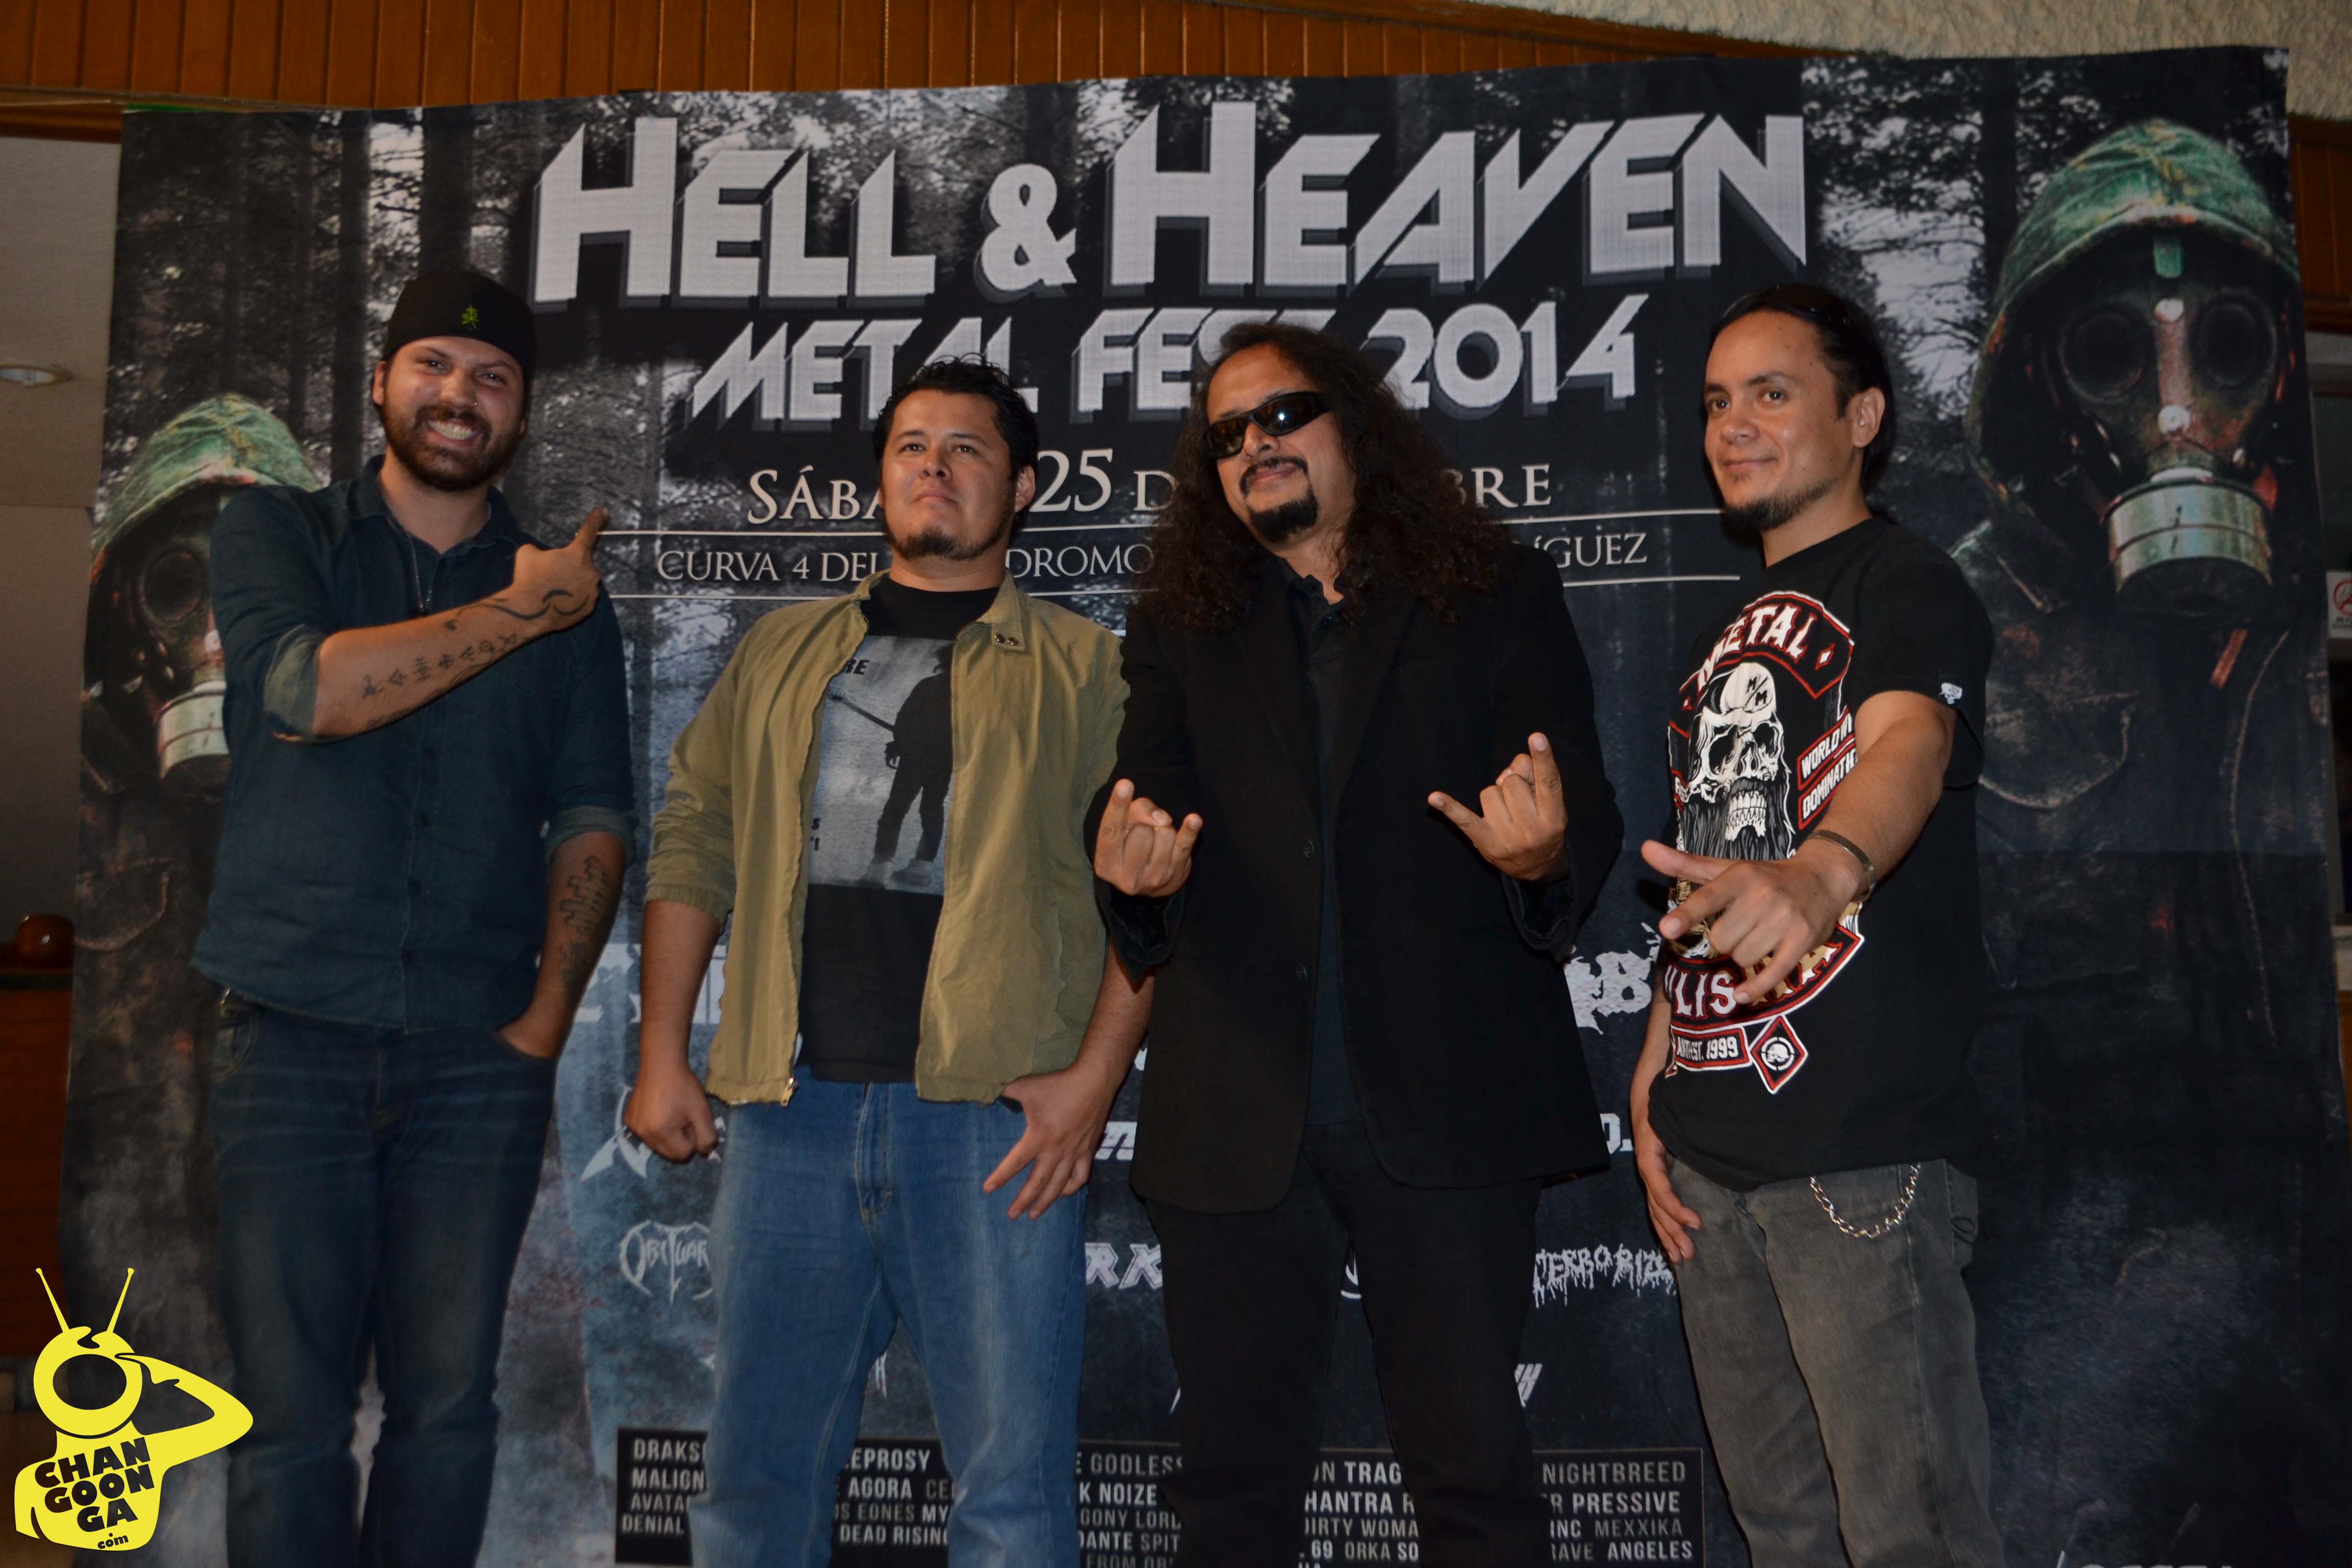 Hell&Heaven Morelia 2014